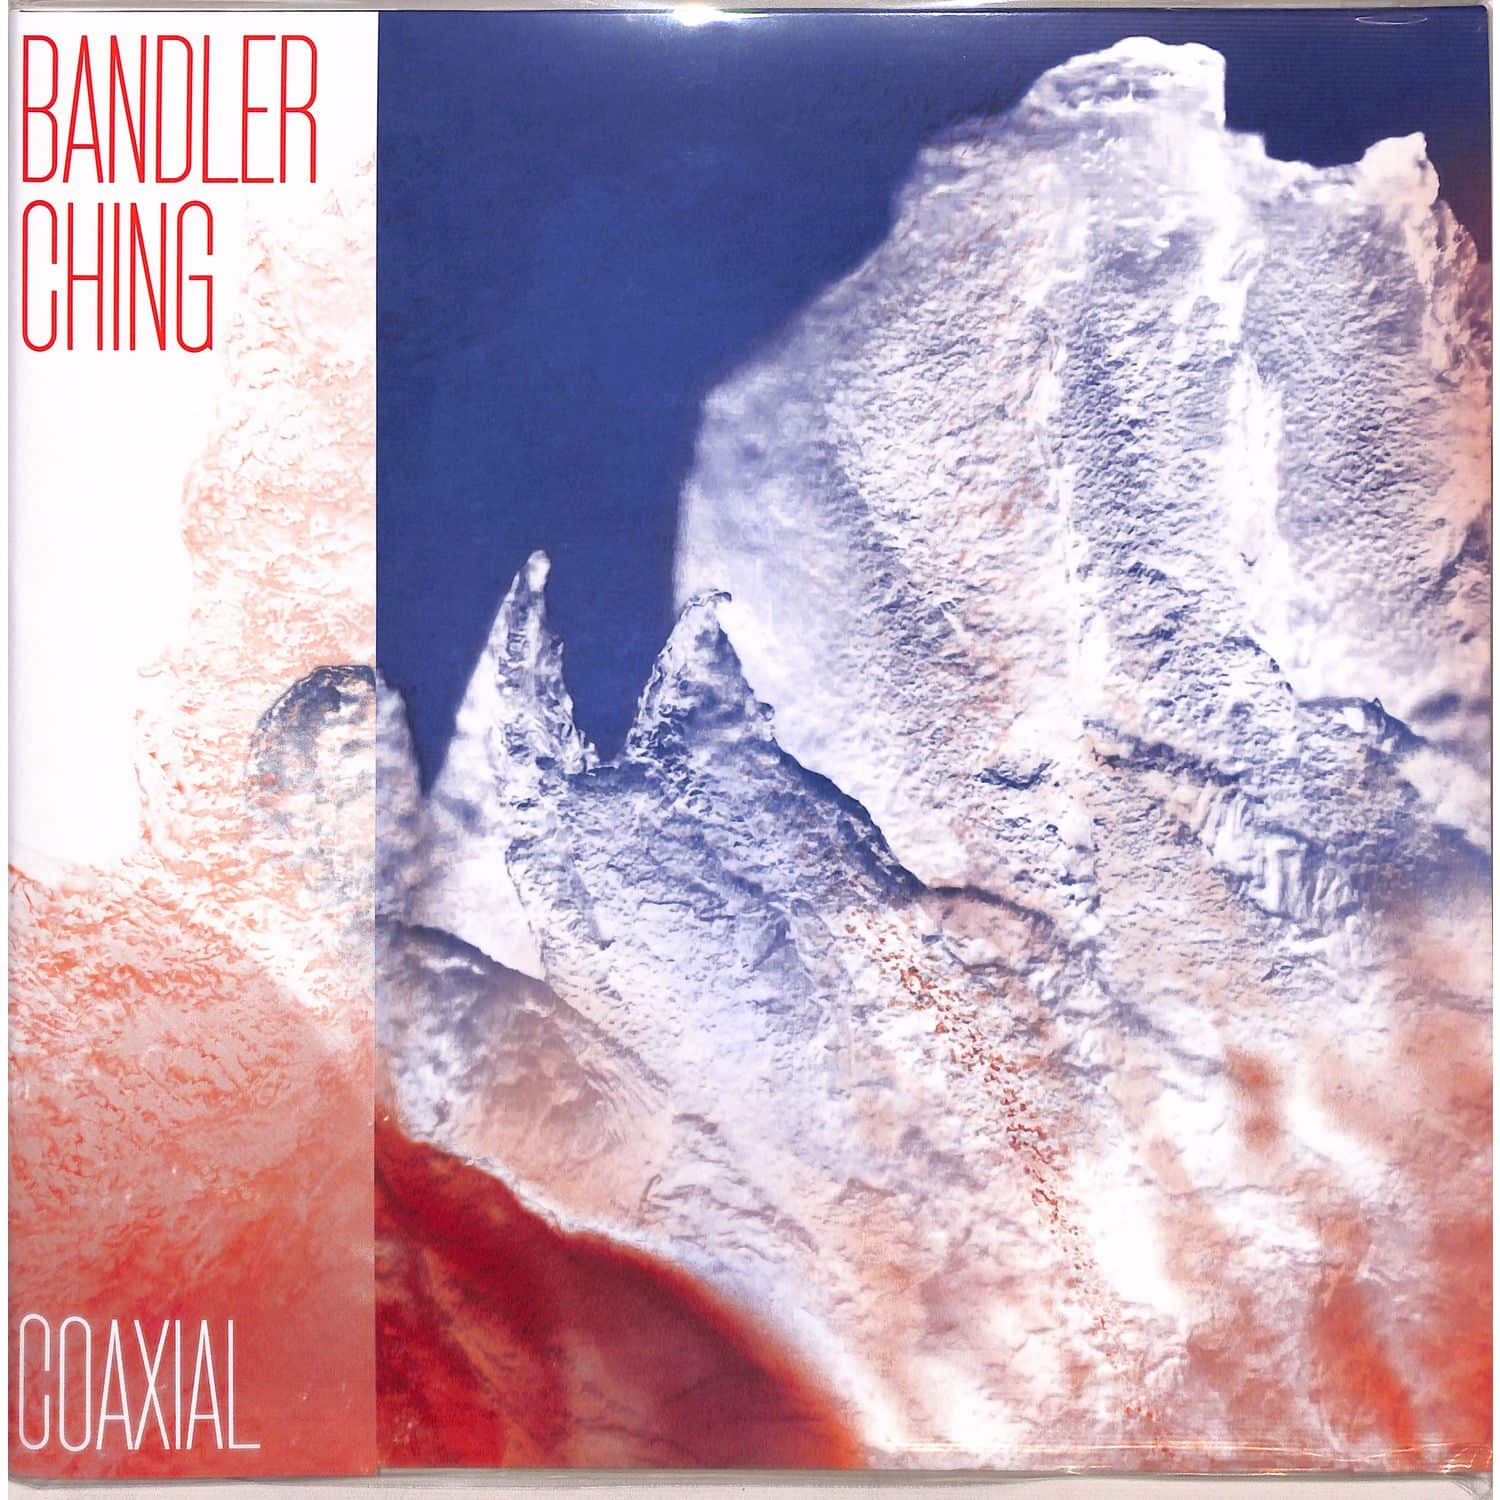 Bandler Ching - COAXIAL